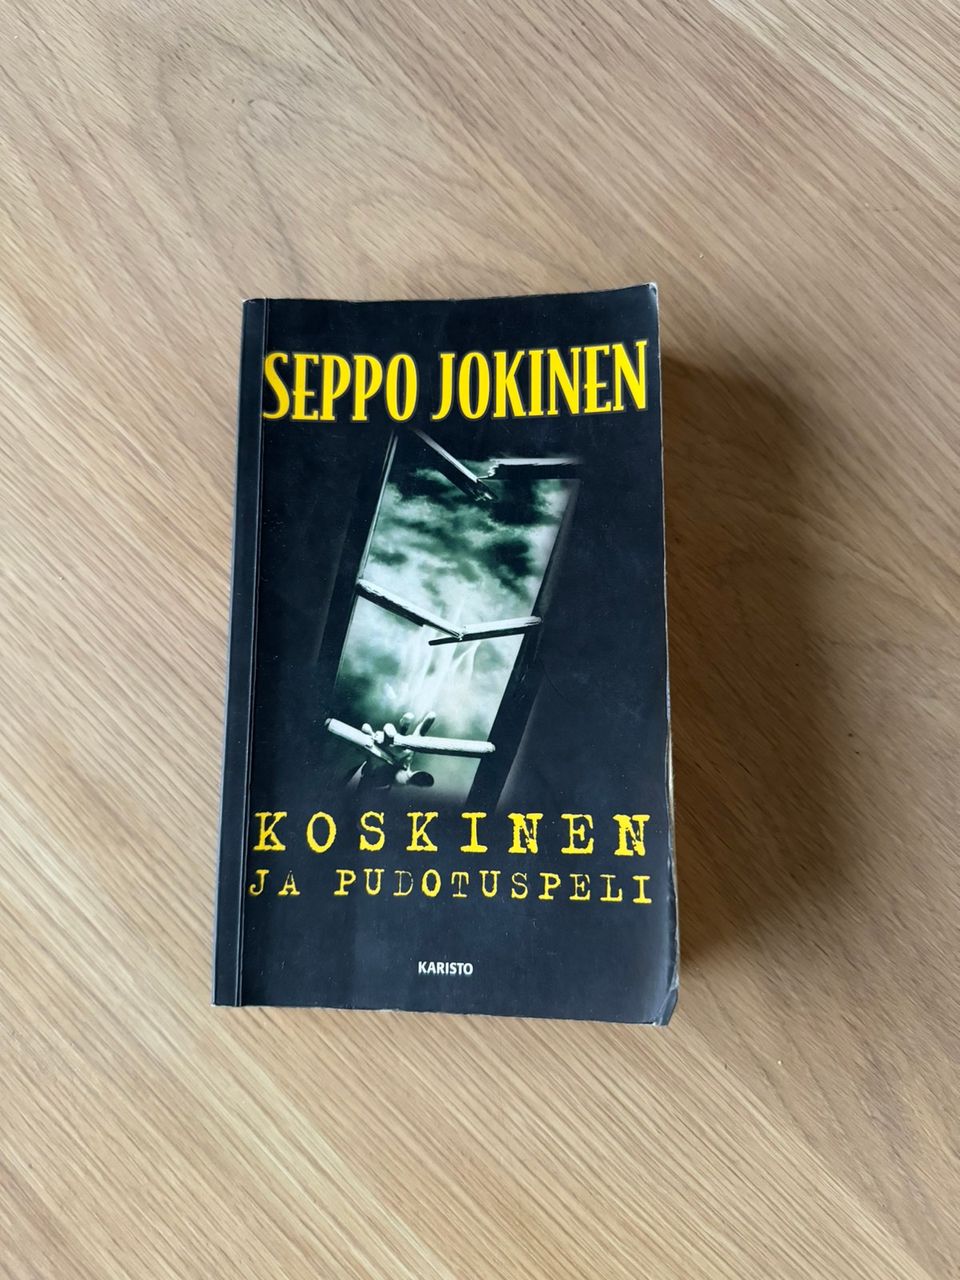 Koskinen ja pudotuspeli kirja, Seppo Jokinen